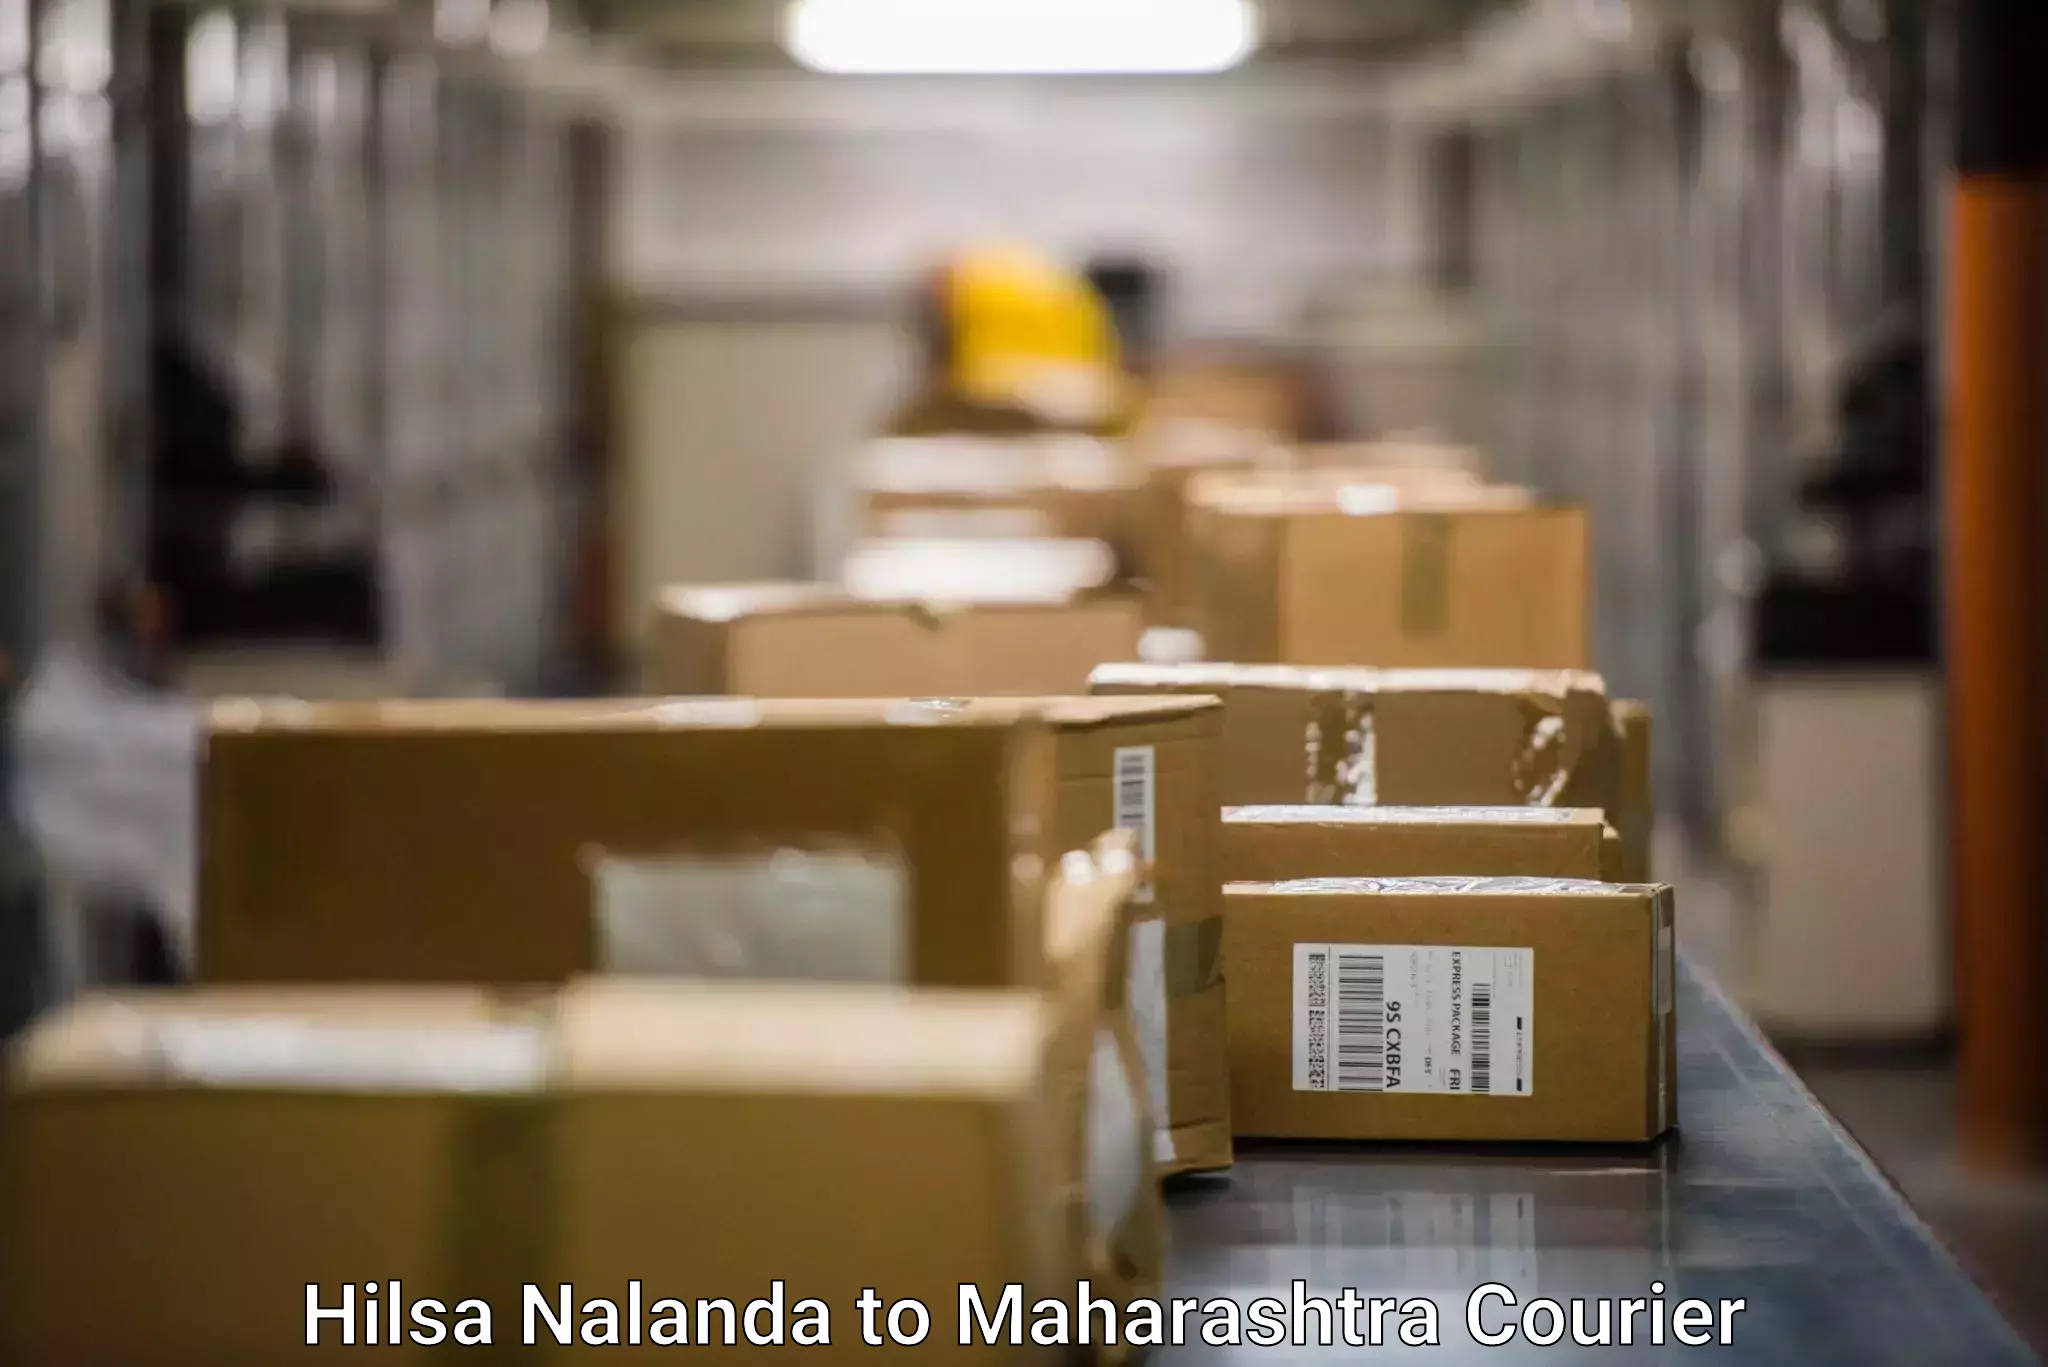 Efficient logistics management in Hilsa Nalanda to Dahanu